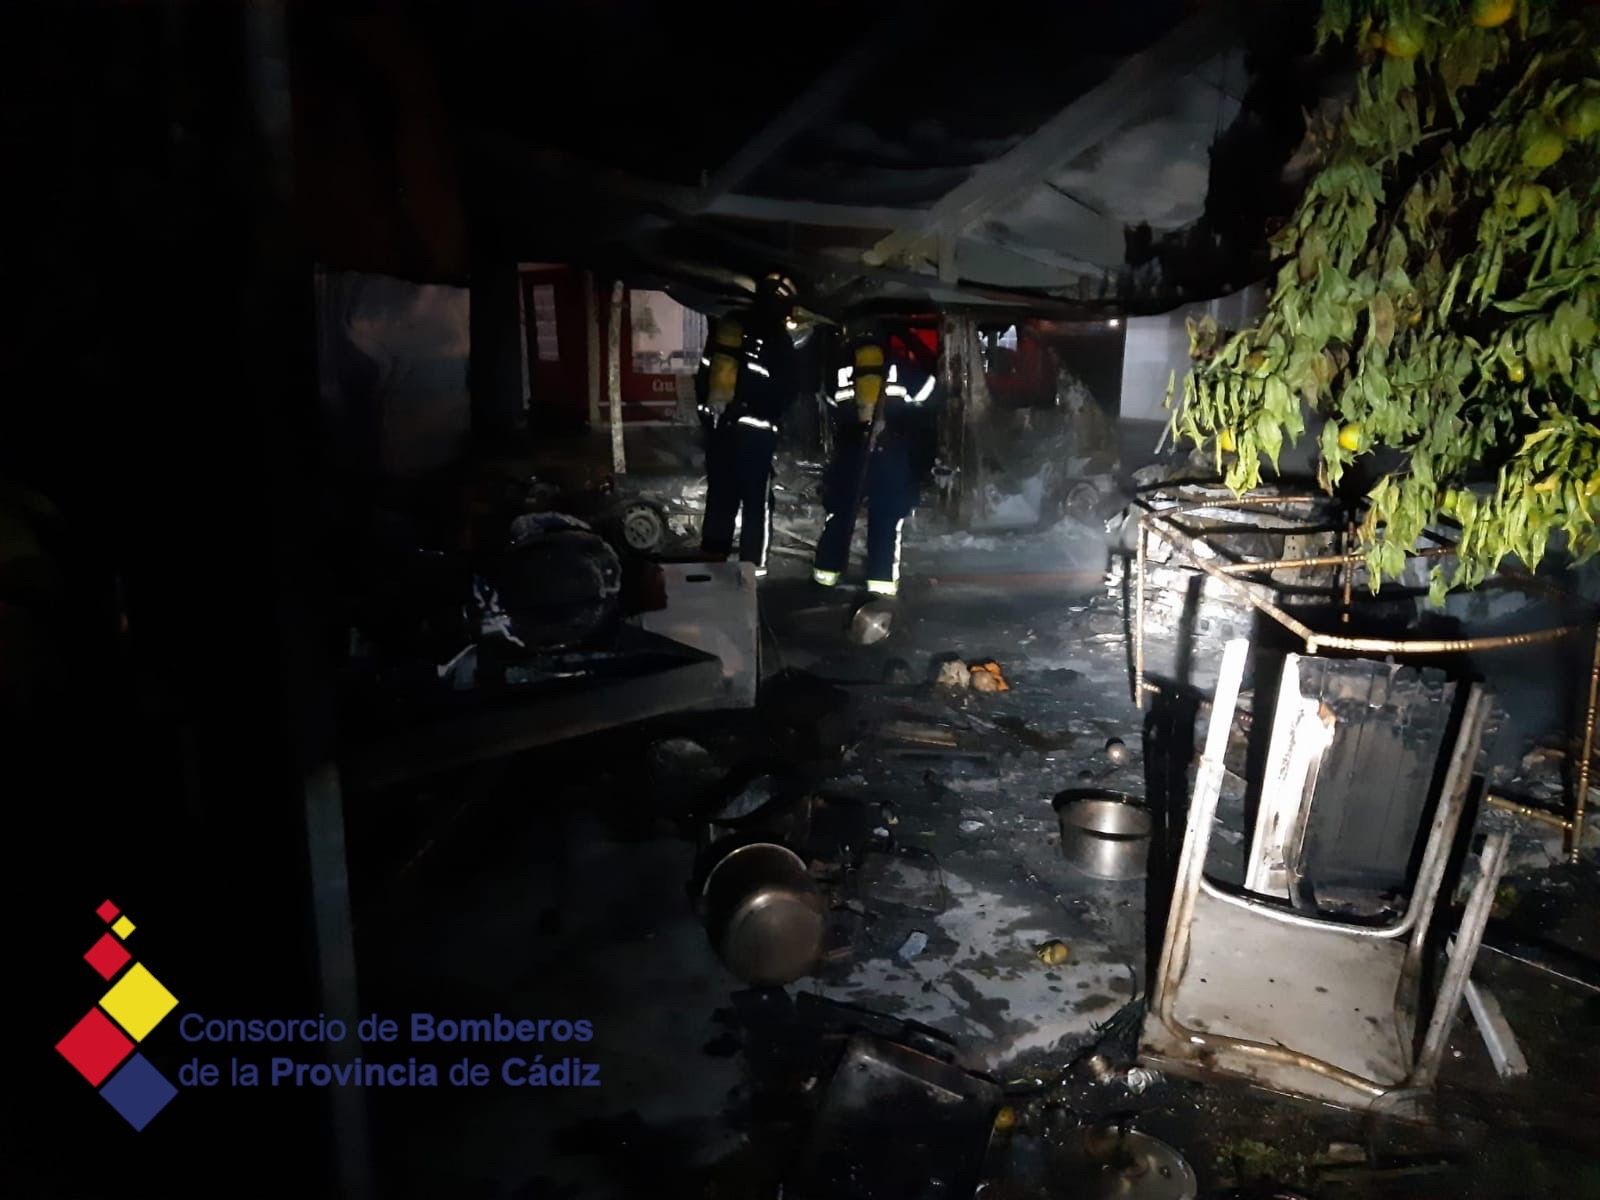 Bomberos intervienen en el Incendio en El Chaparrito, Jerez, esta pasada madrugada, con un turismo y una autocaravana afectados.